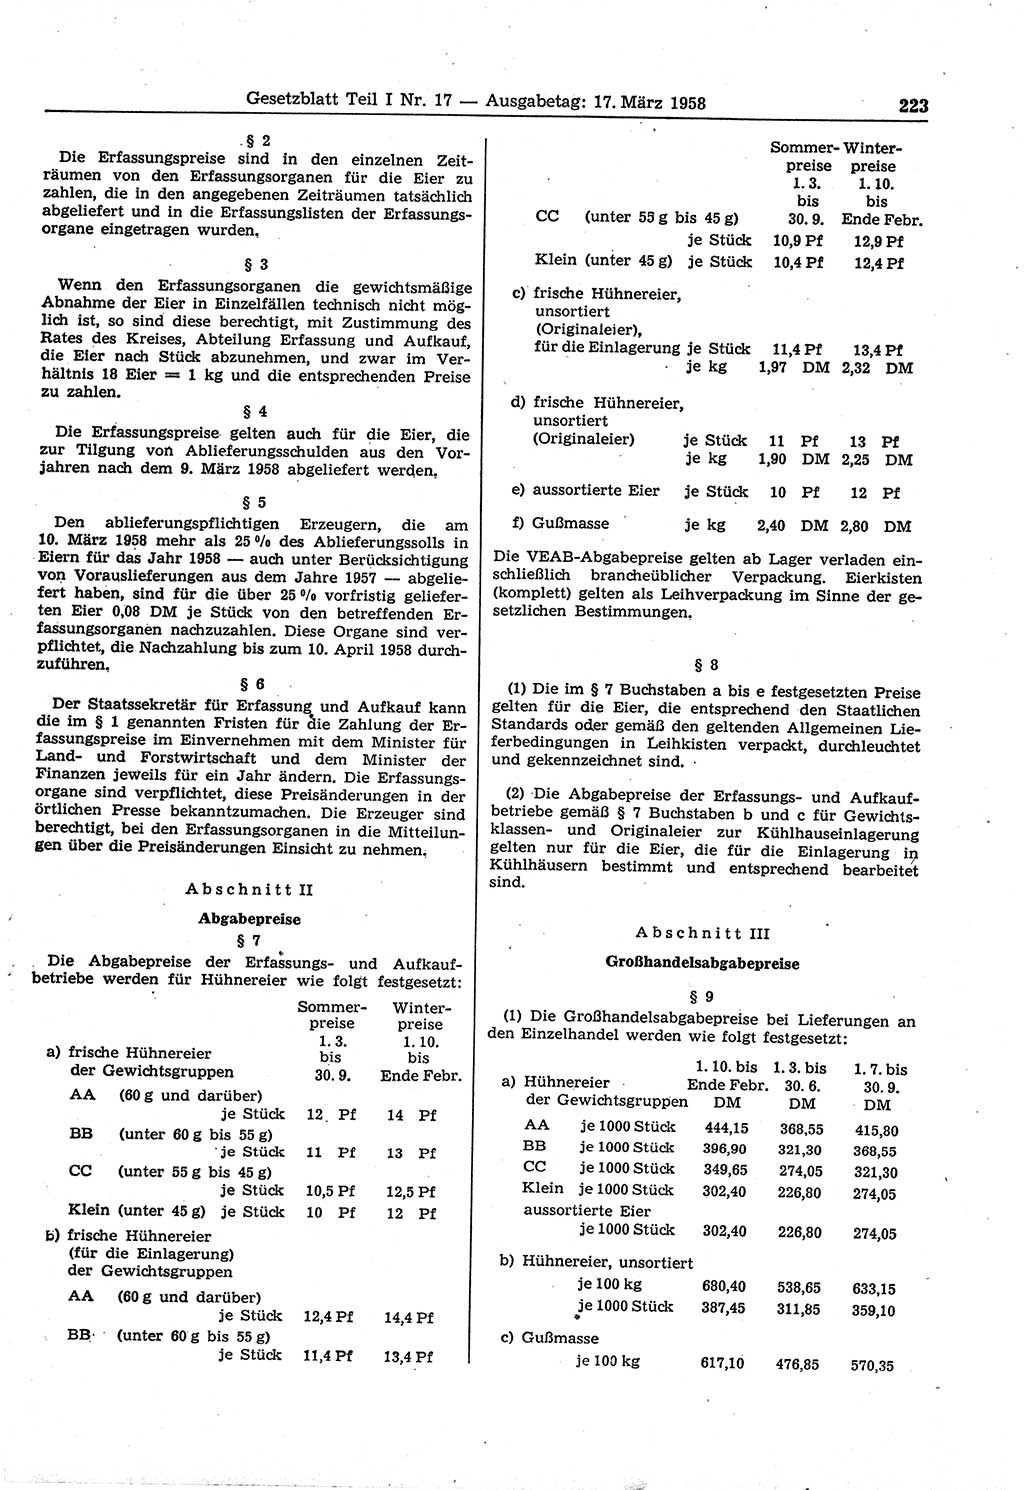 Gesetzblatt (GBl.) der Deutschen Demokratischen Republik (DDR) Teil Ⅰ 1958, Seite 223 (GBl. DDR Ⅰ 1958, S. 223)